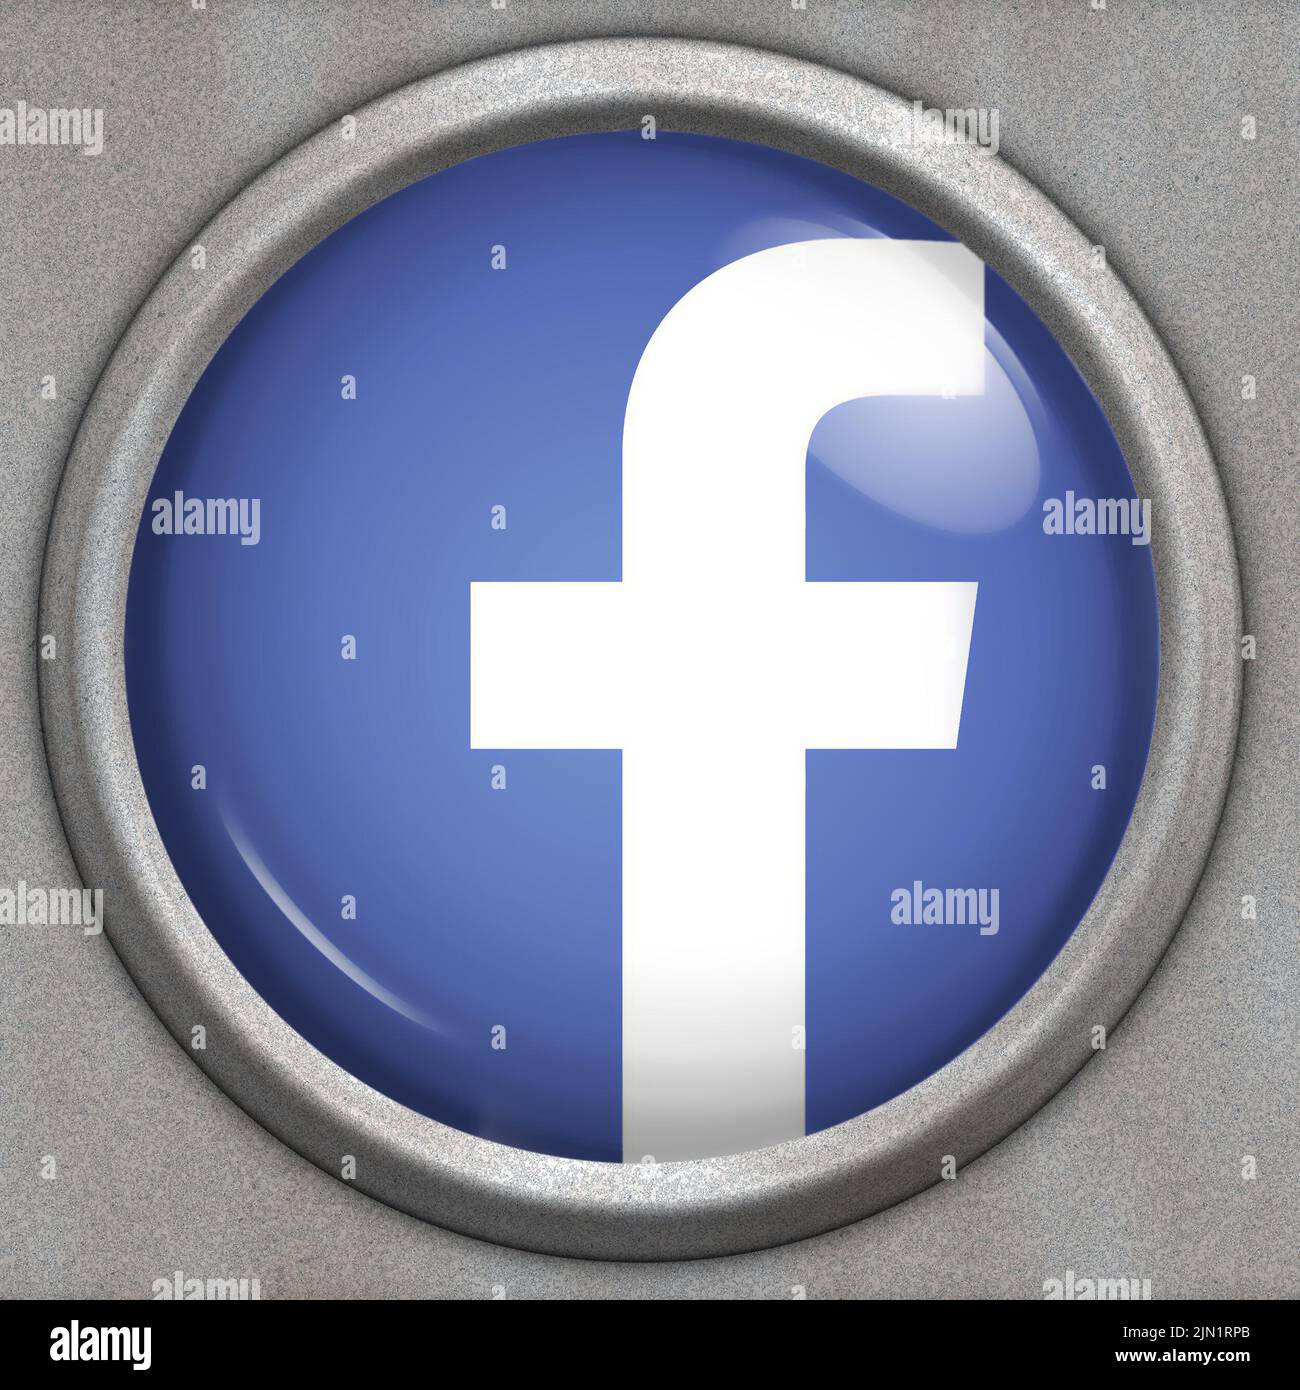 button with logo of social media service Facebook Stock Photo